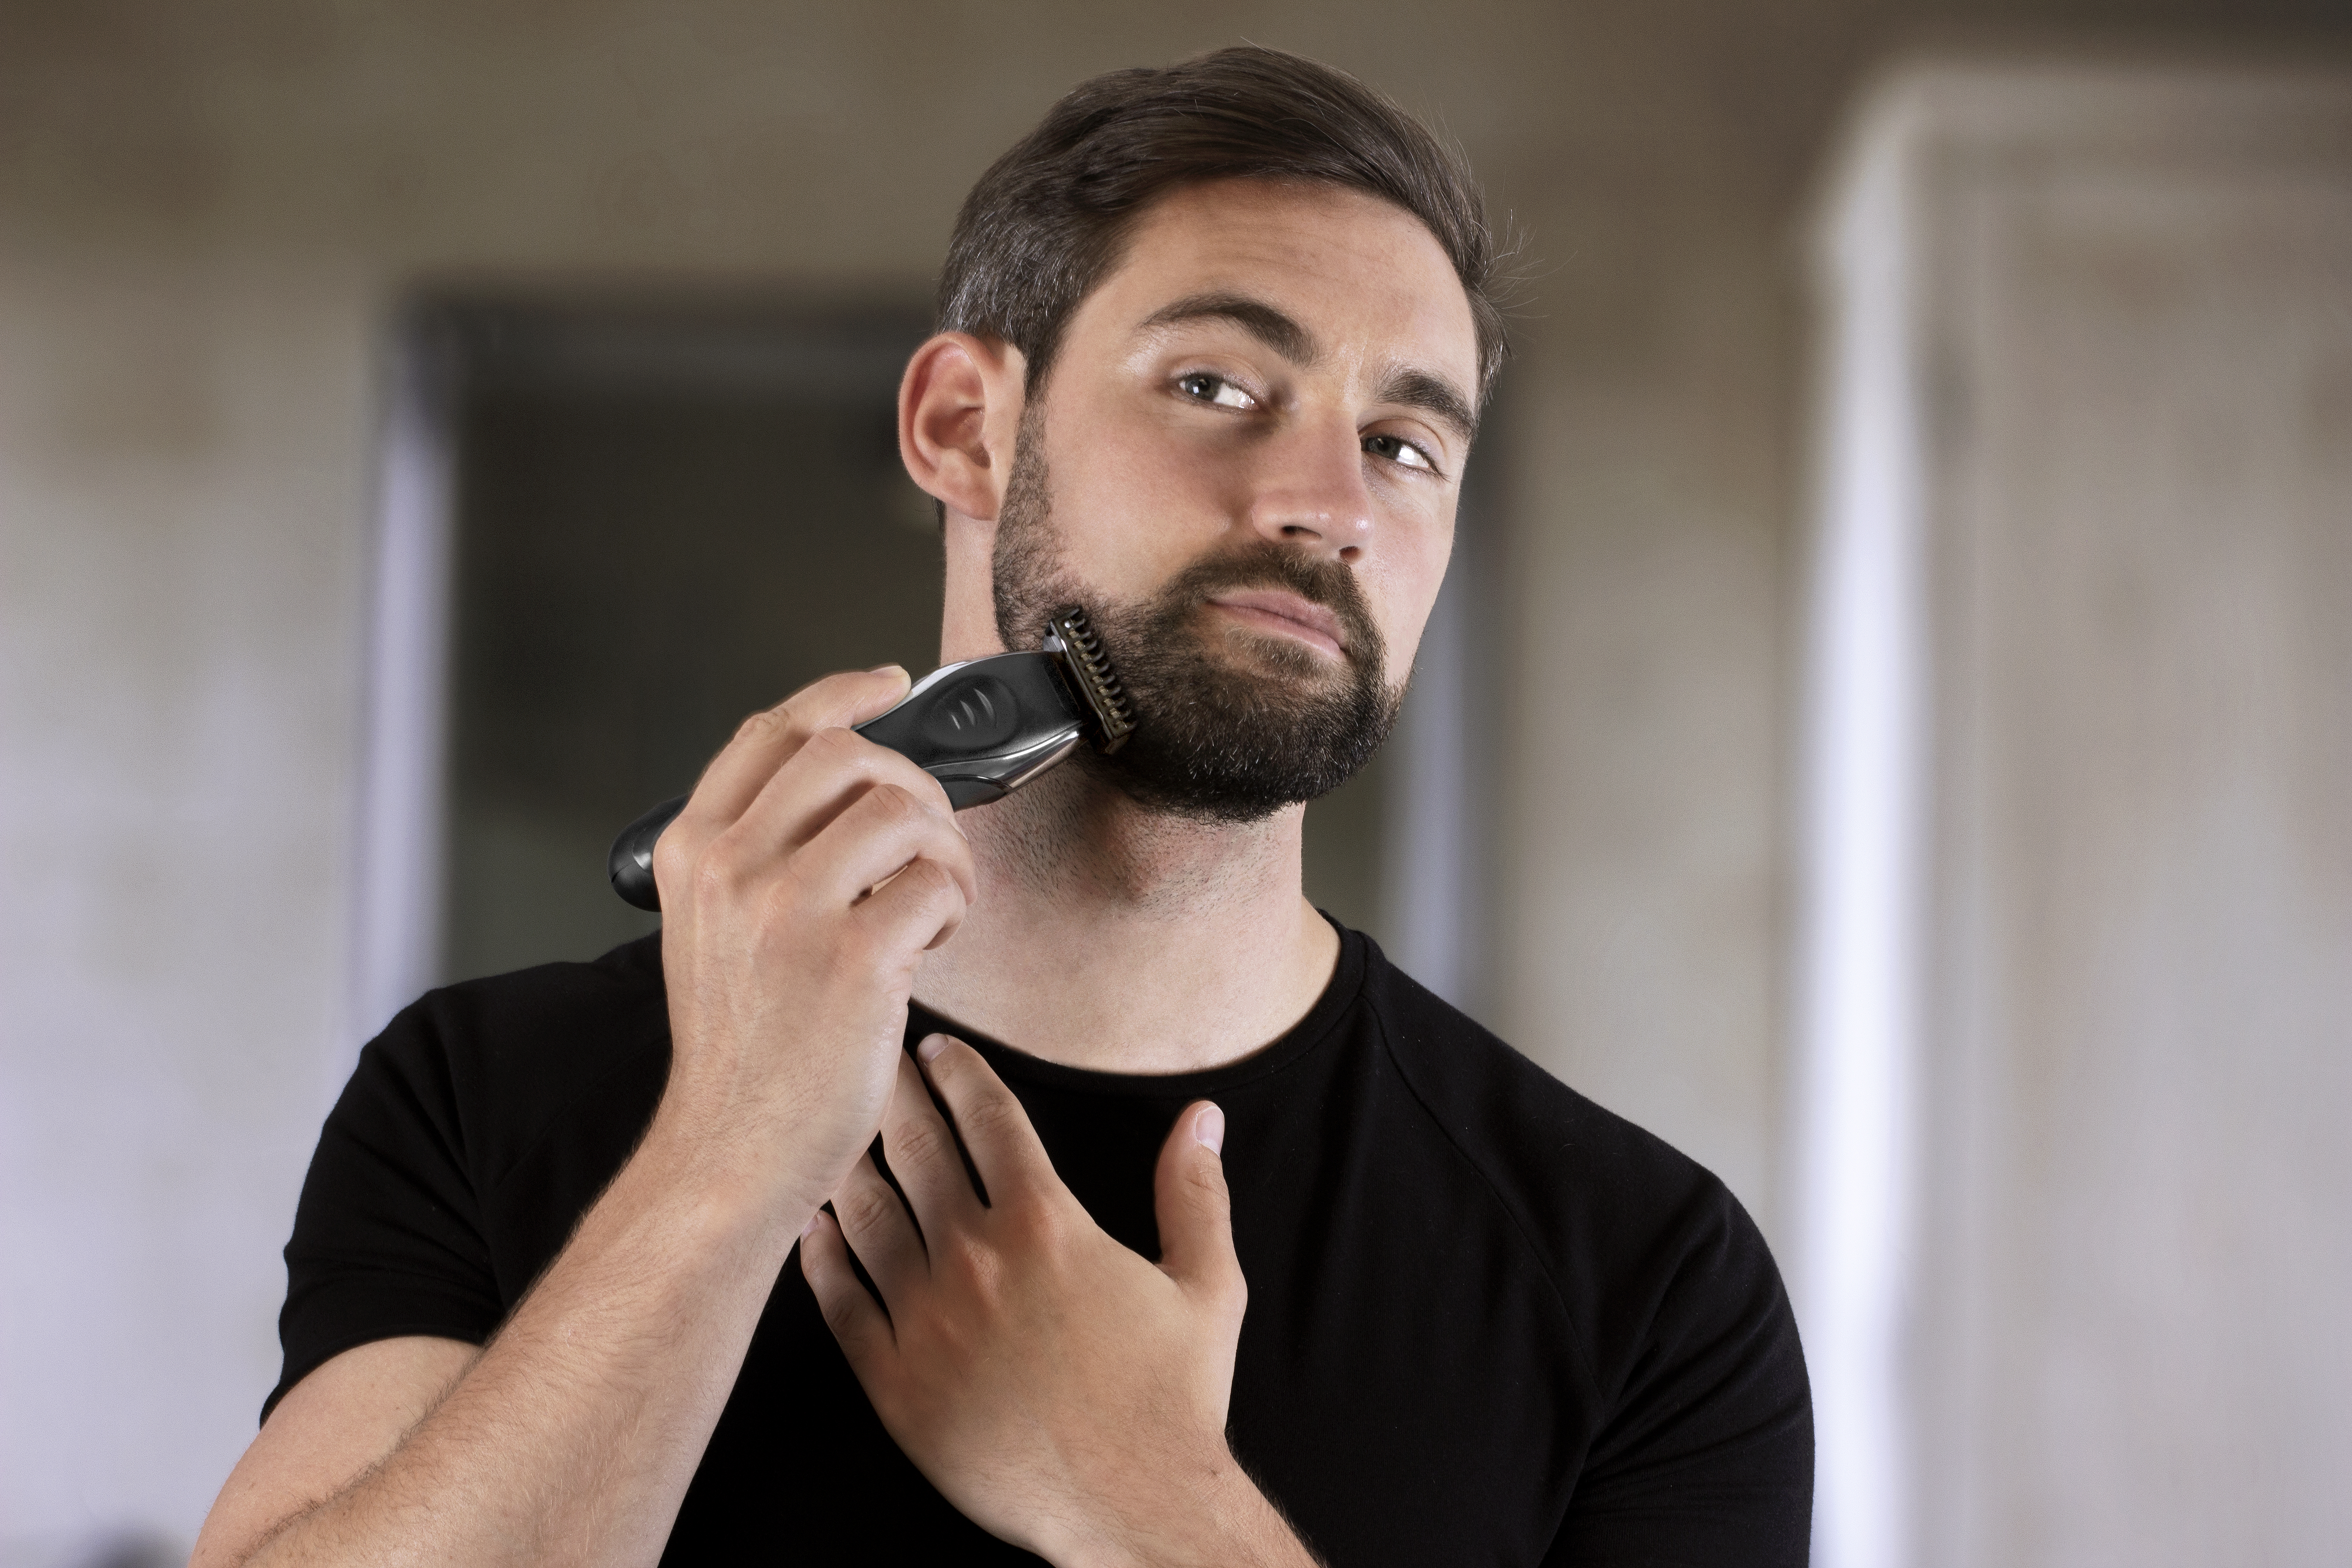 beard trimmer guard sizes mm